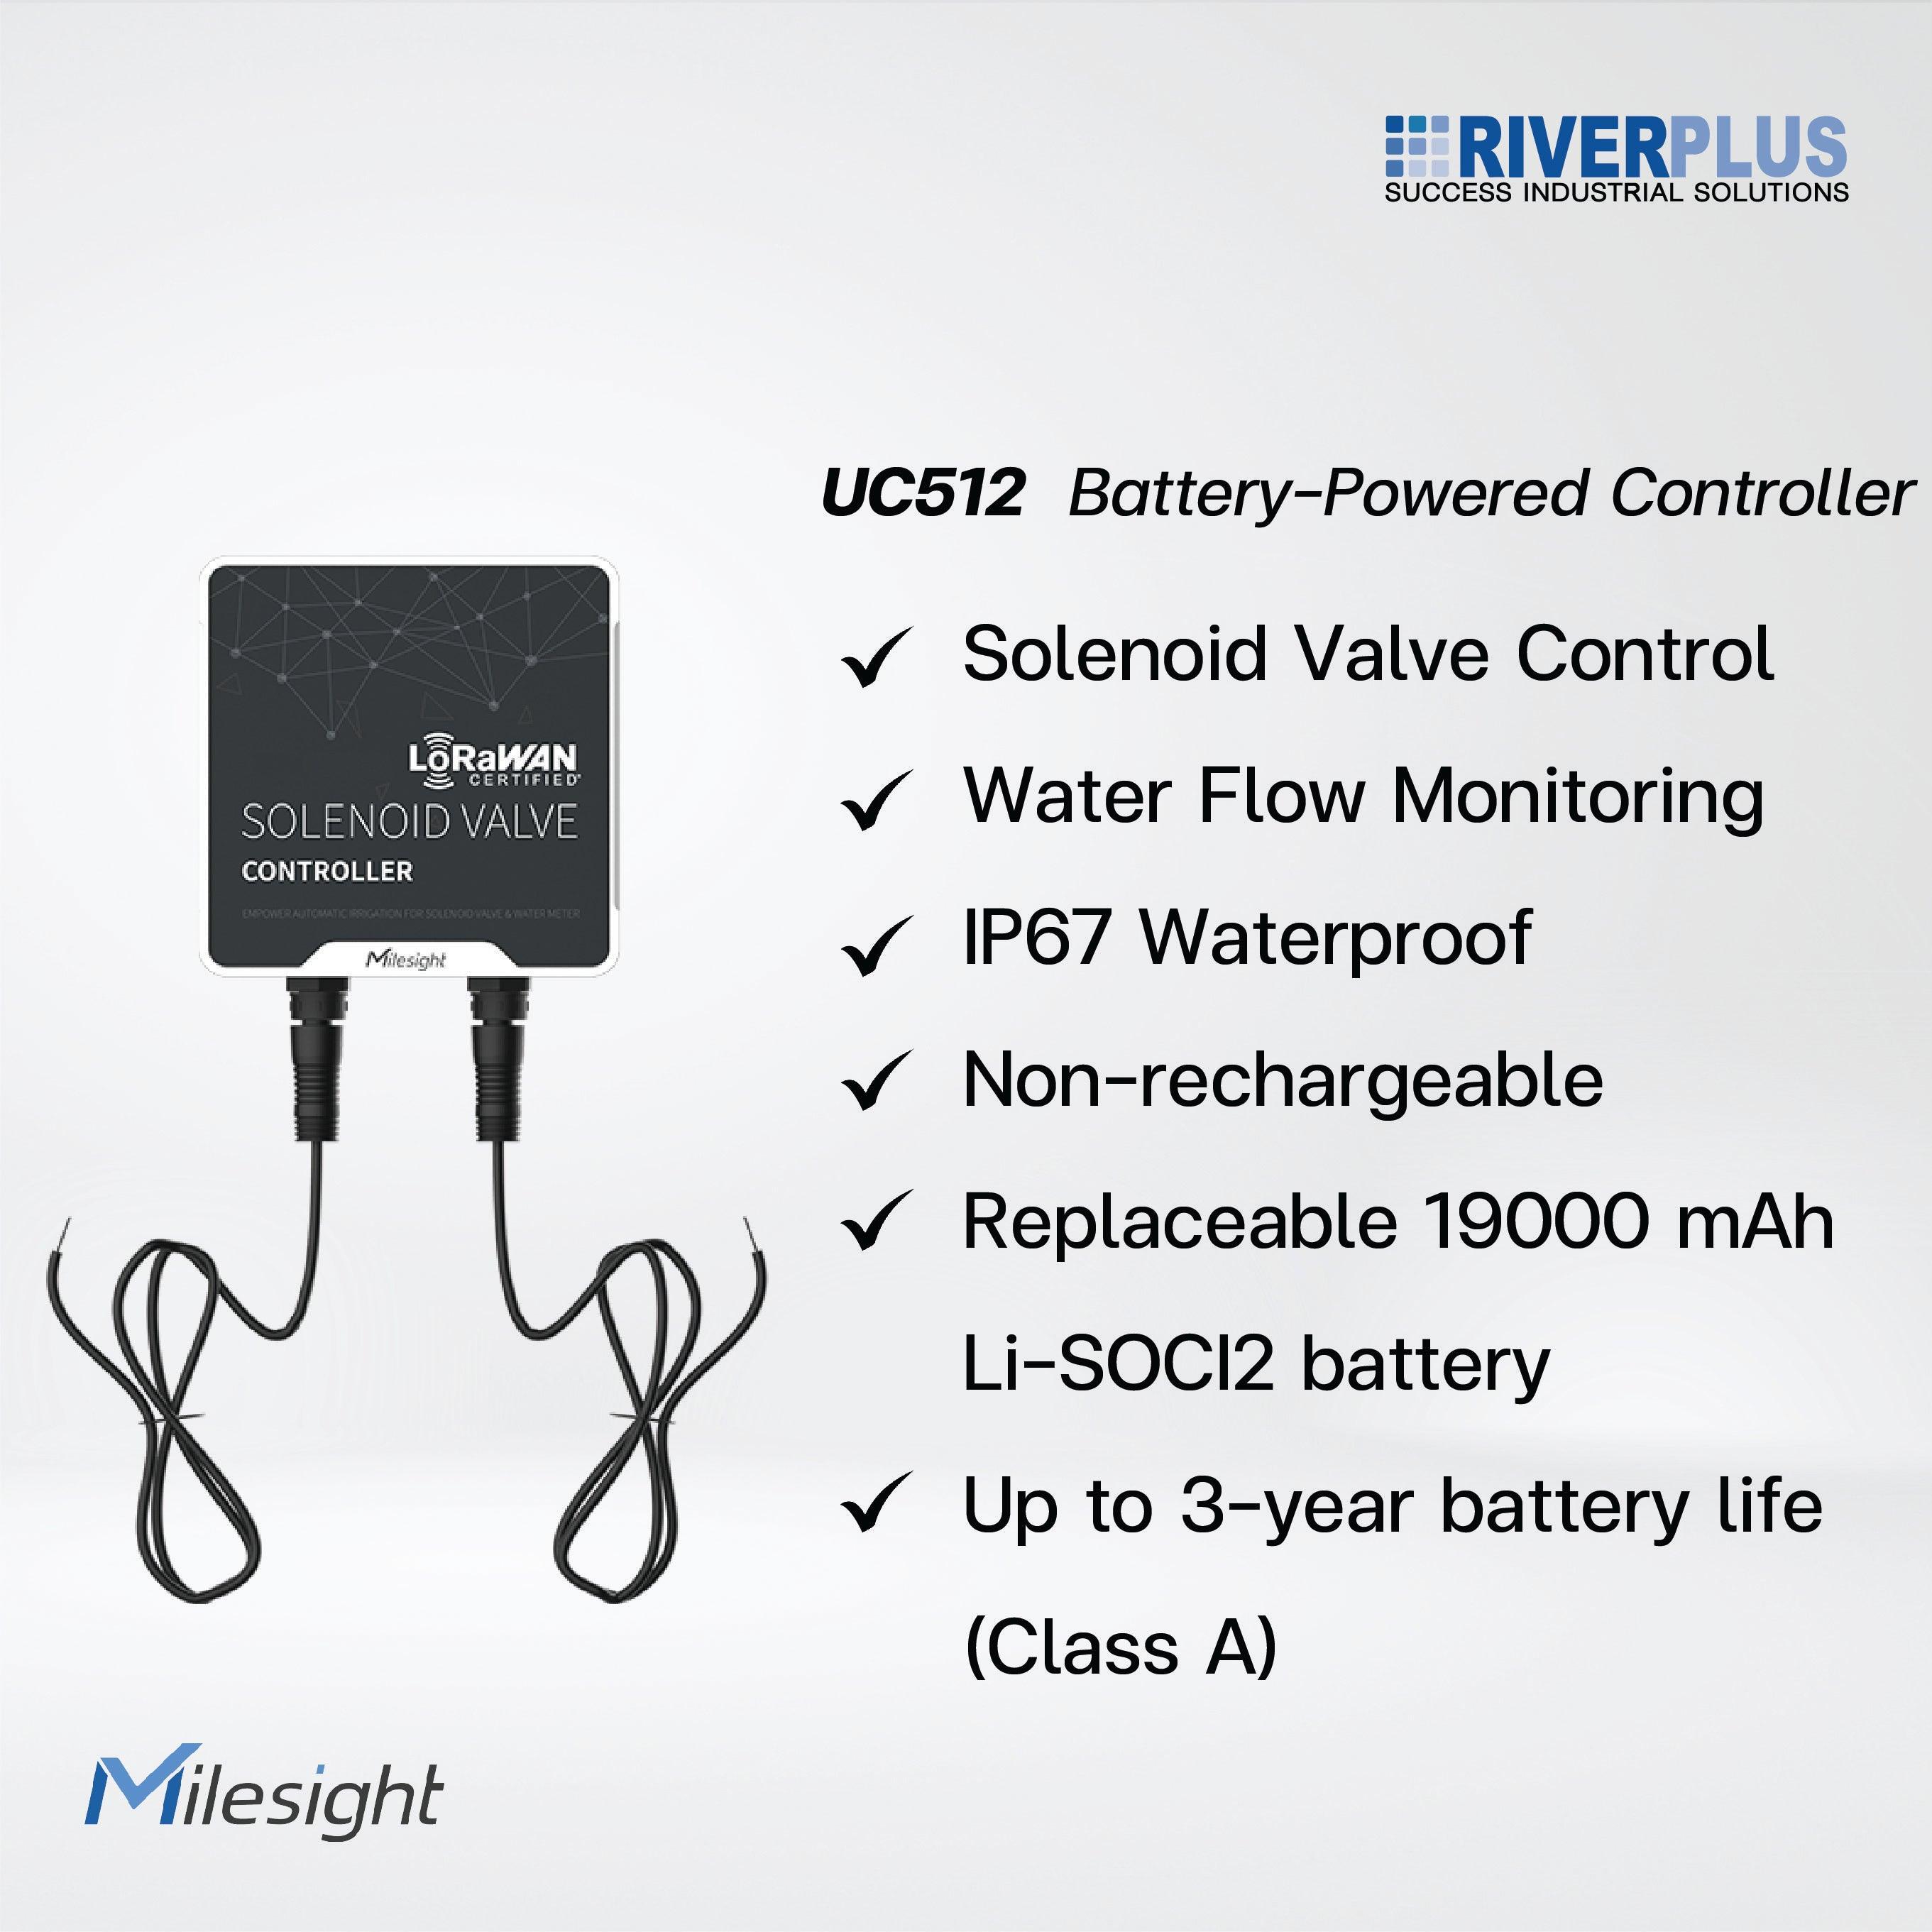 UC512 Solenoid Valve Controller - Riverplus